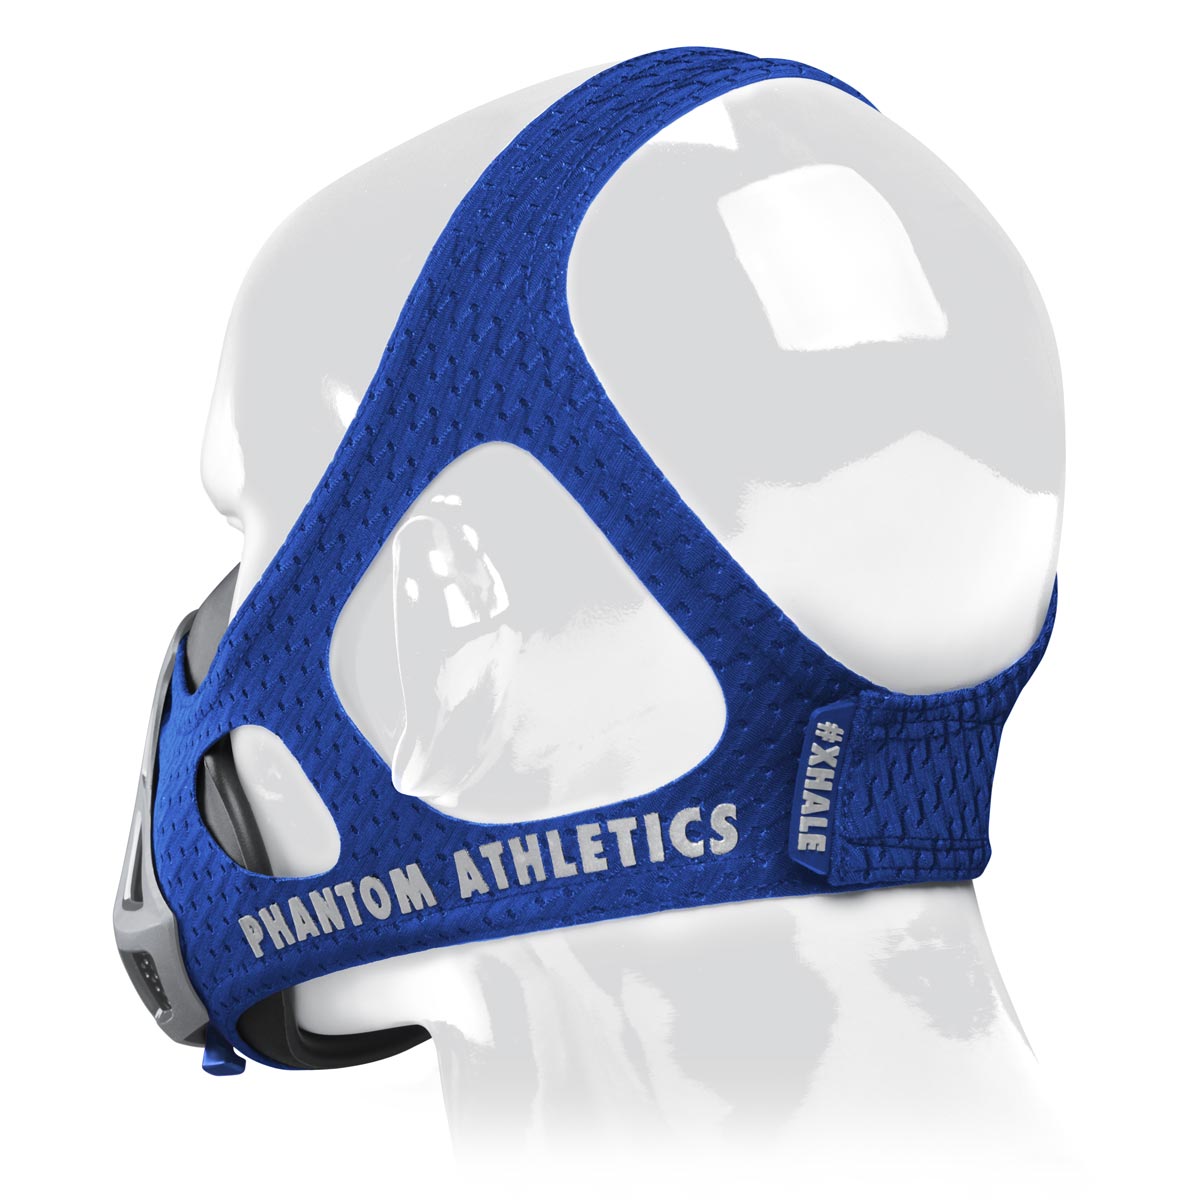 Die Phantom Trainingsmaske in der Mystery Version. Lass dich von der Farbe überraschen. Ideales Trainingsgerät um deine Fitness auf das nächste Level zu heben. Perfekte Passform durch unser patentiertes Kopfband.